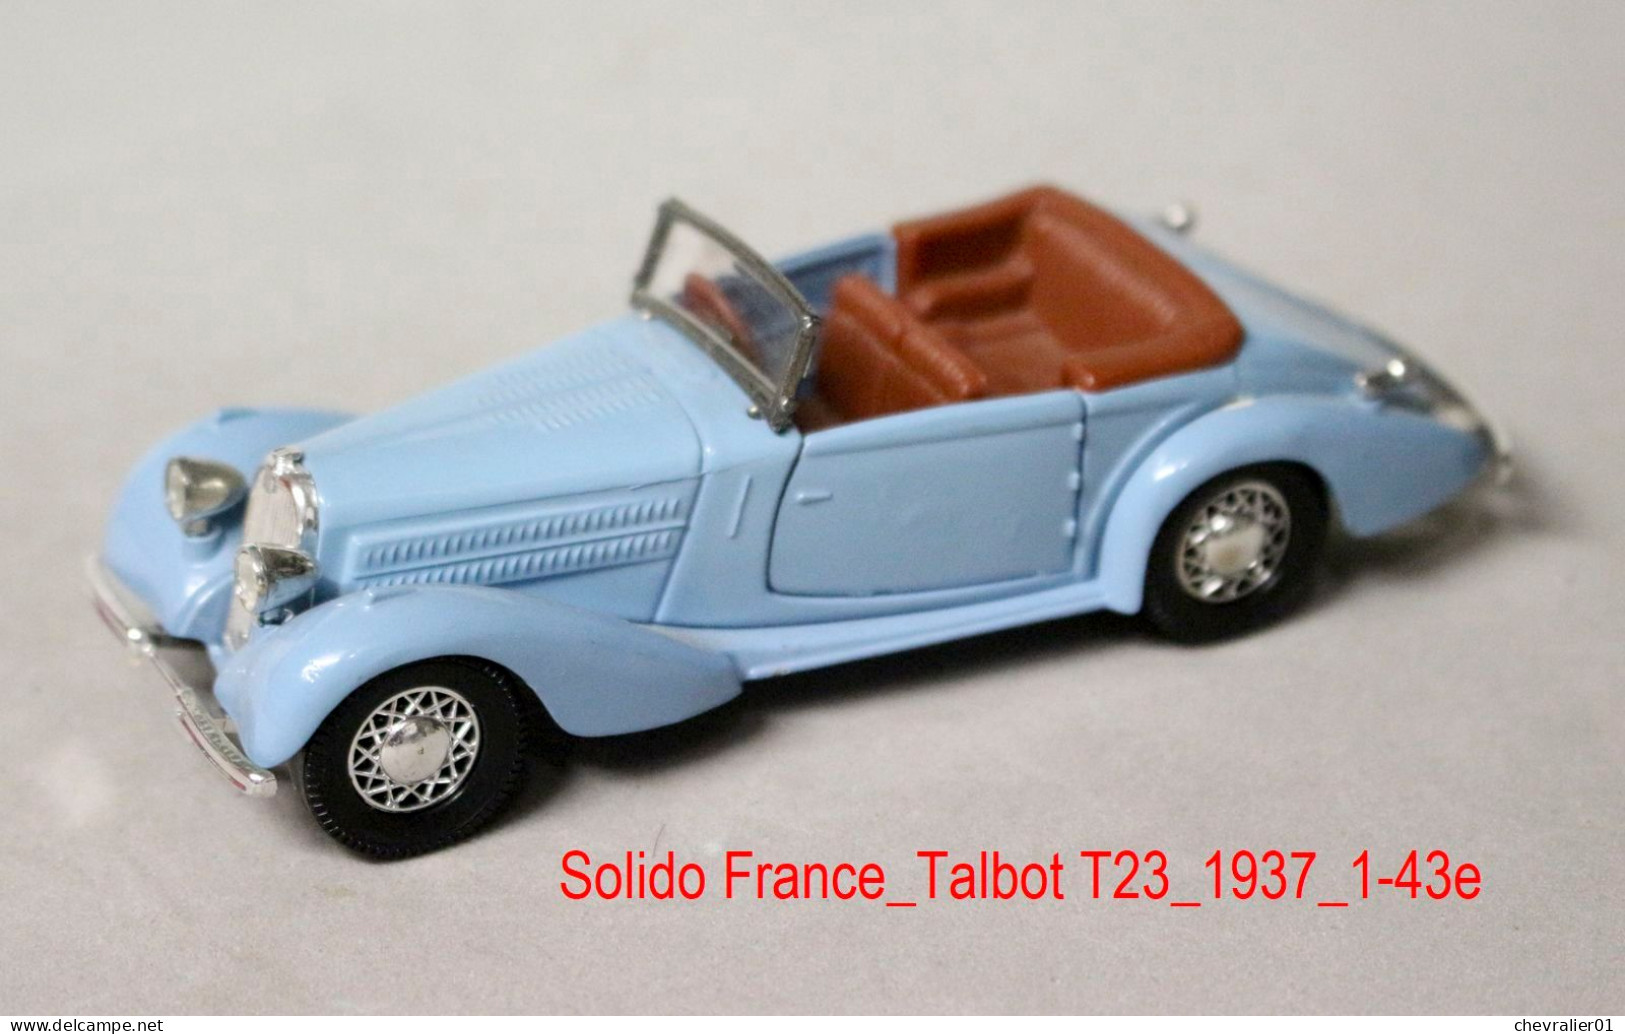 Véhicules_Solido France_lot de 3 voitures Talbot-Simca-Matra_1-43e